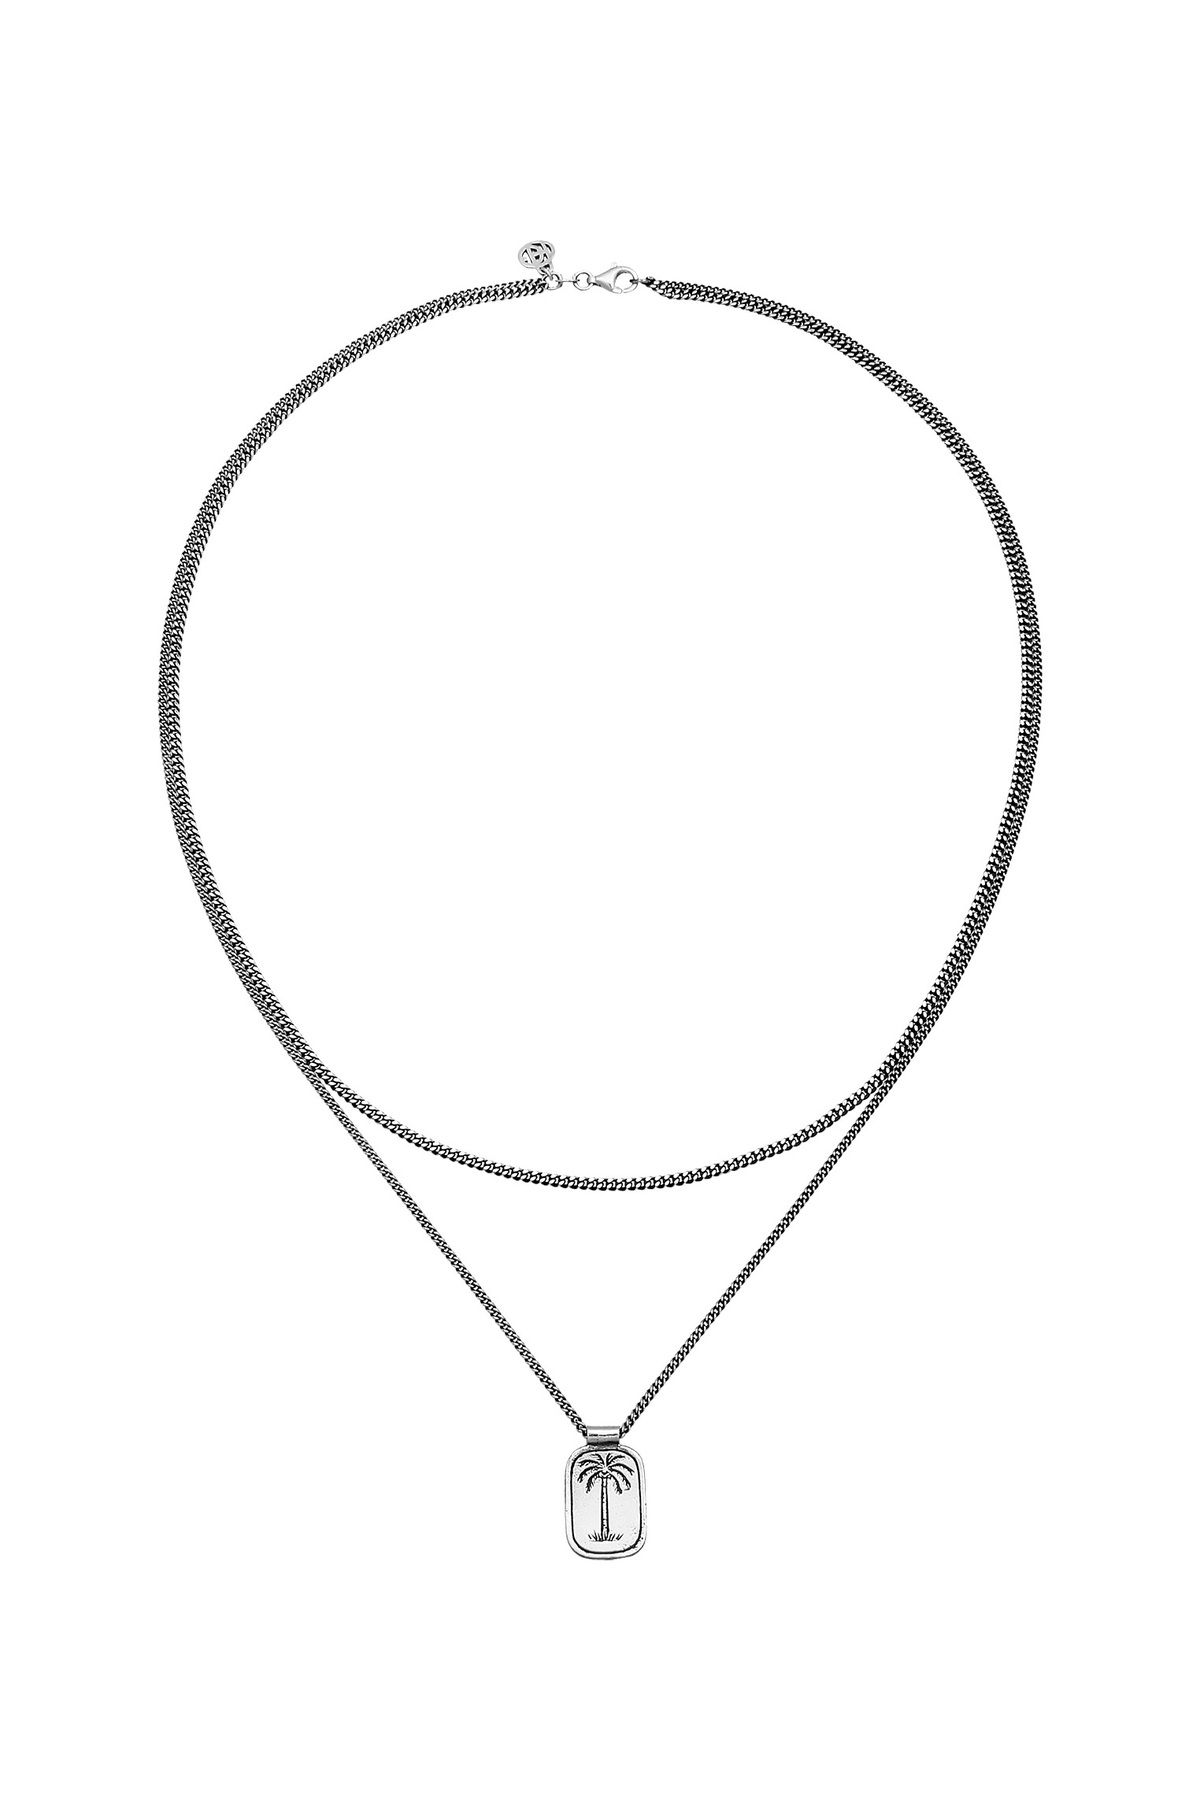 HAZE & GLORY - Trendyol - 925 Plättchen Coconut Halskette Palme Society Layer Silber